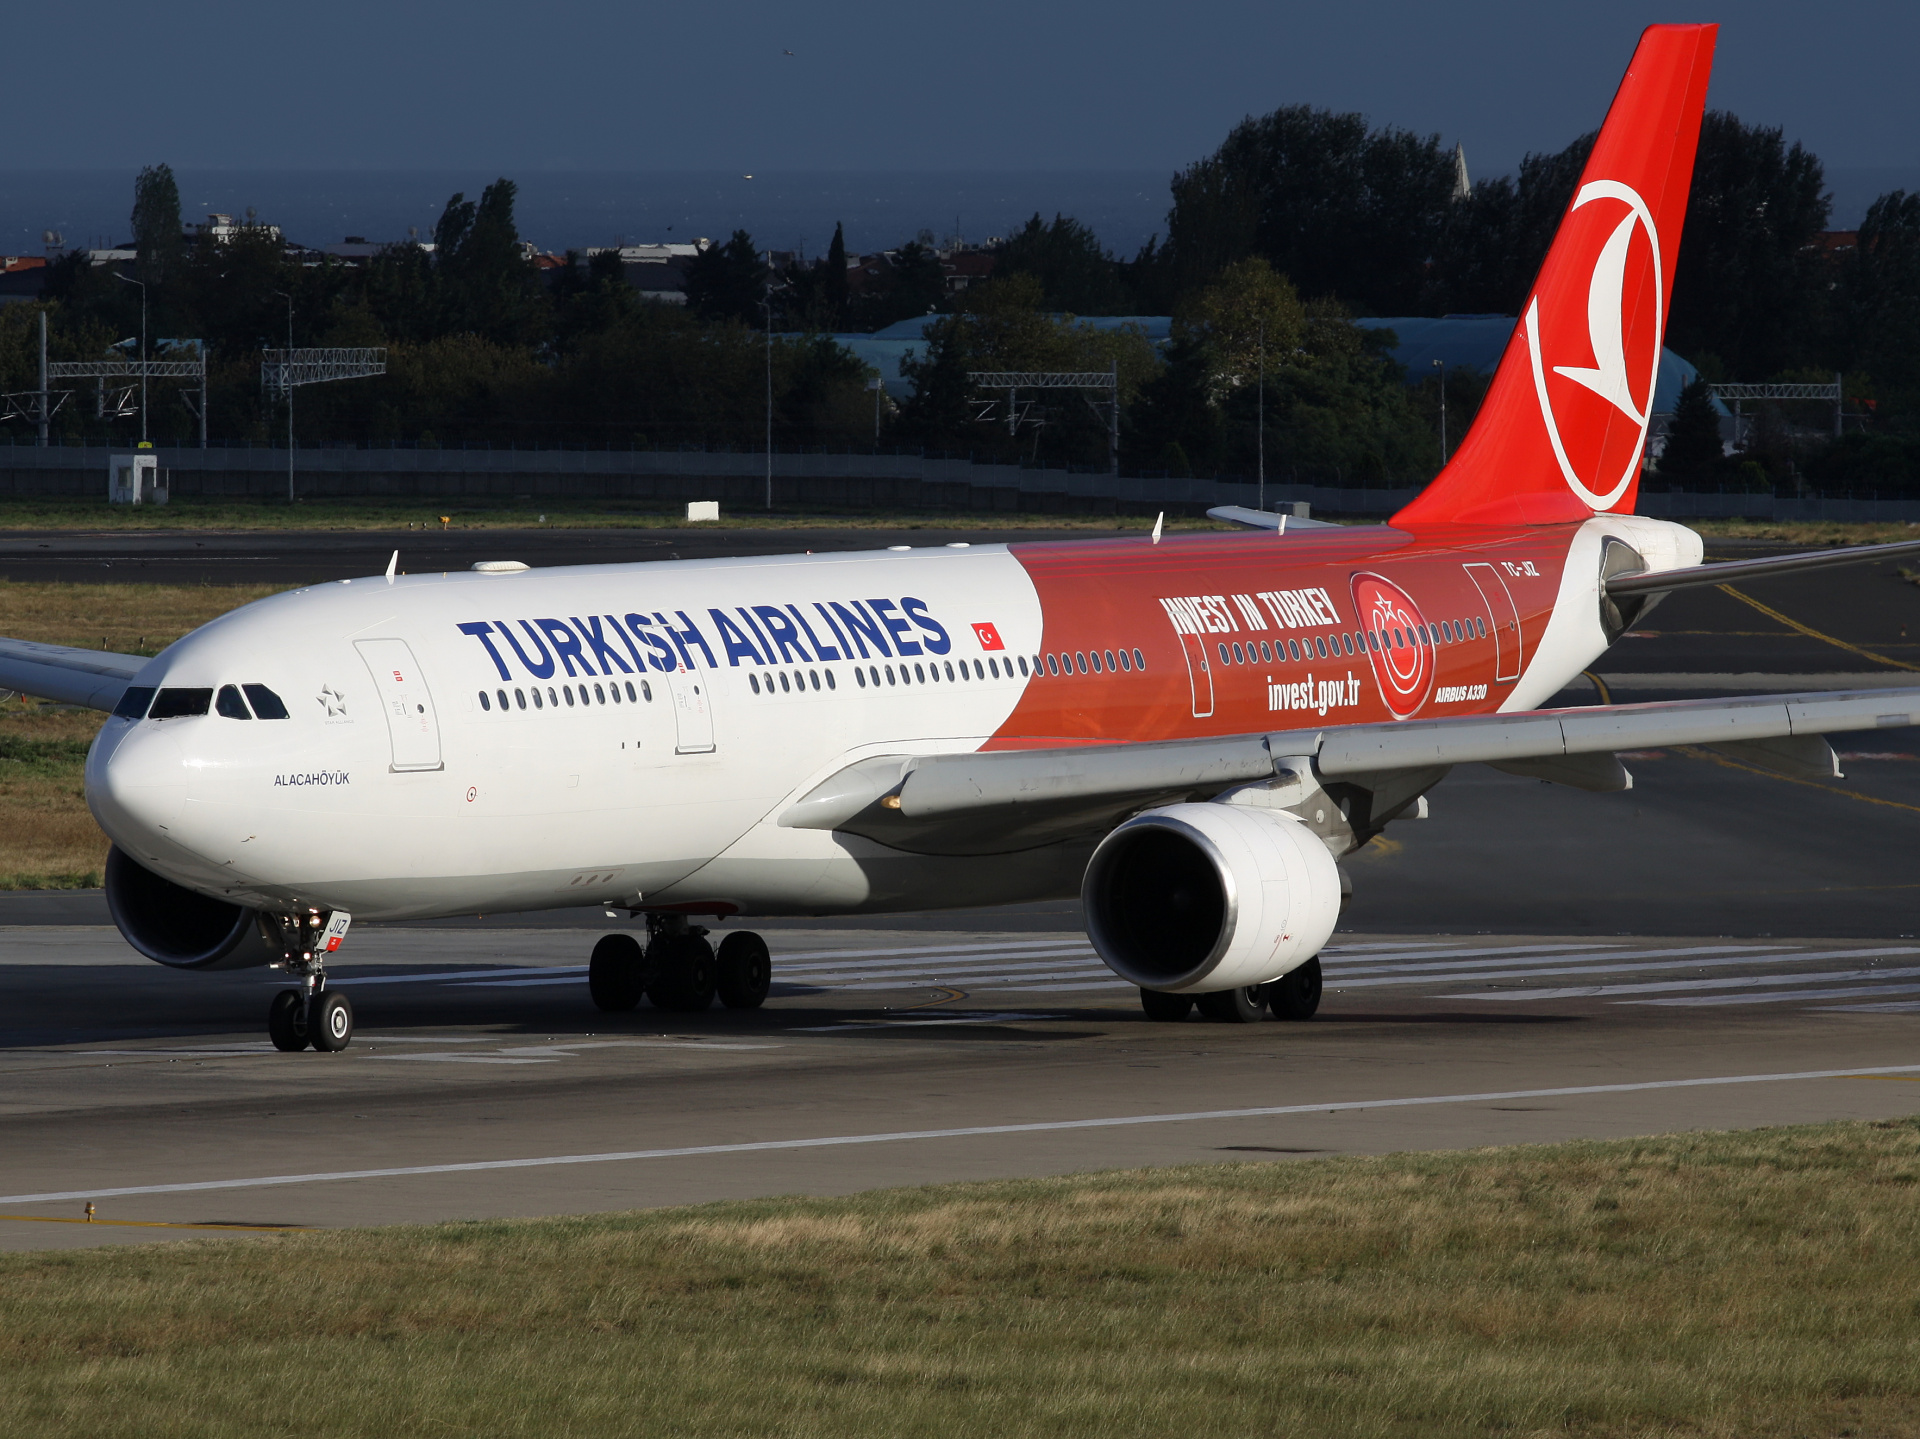 TC-JIZ (malowanie Invest in Turkey) (Samoloty » Port Lotniczy im. Atatürka w Stambule » Airbus A330-200 » THY Turkish Airlines)